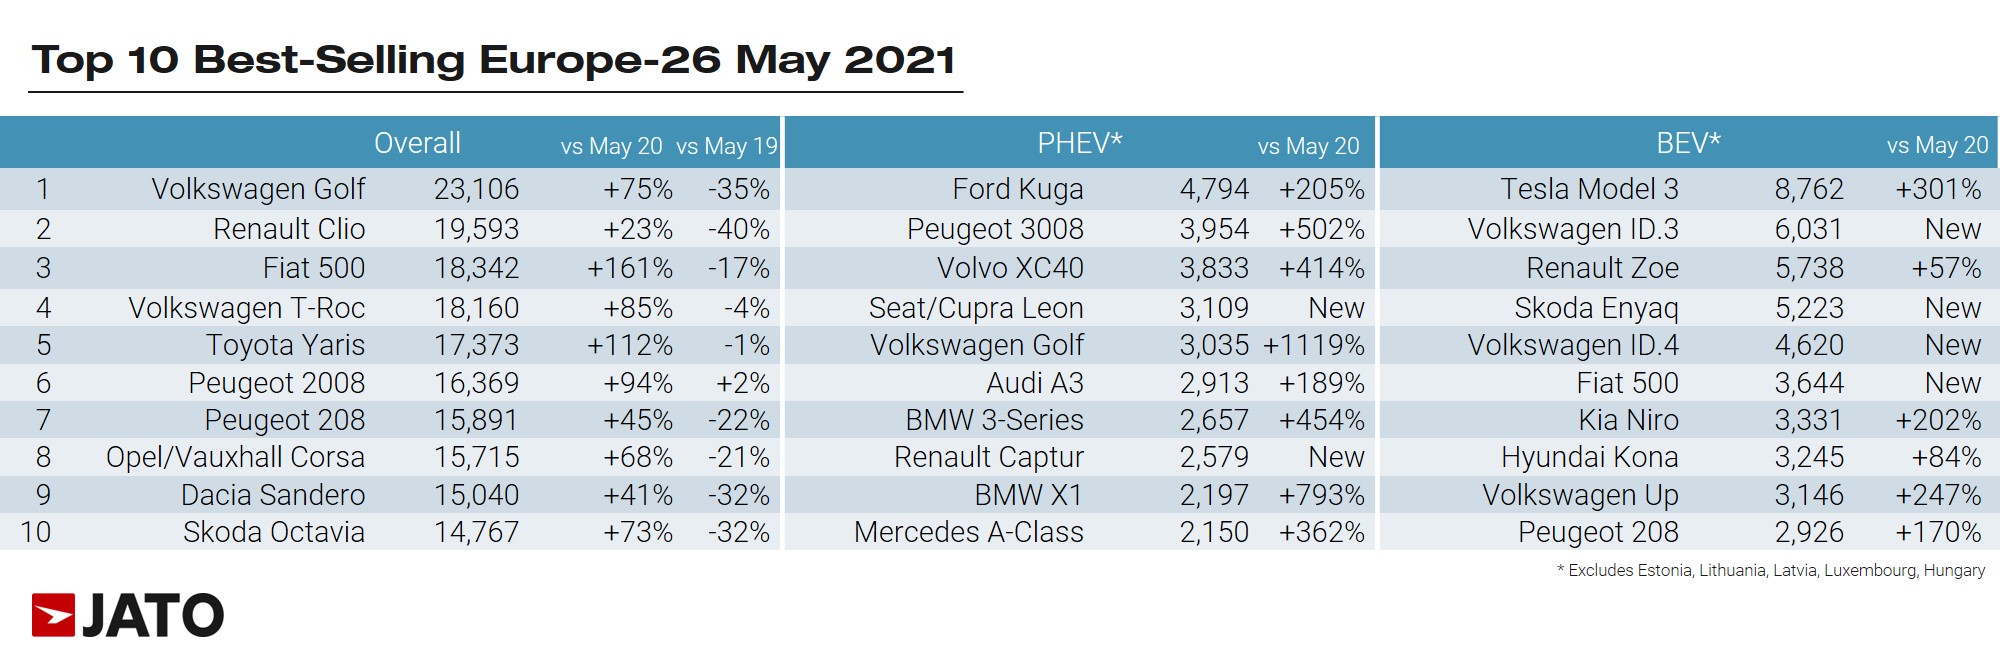 legnépszerűbb modellek Európában – 2021 május